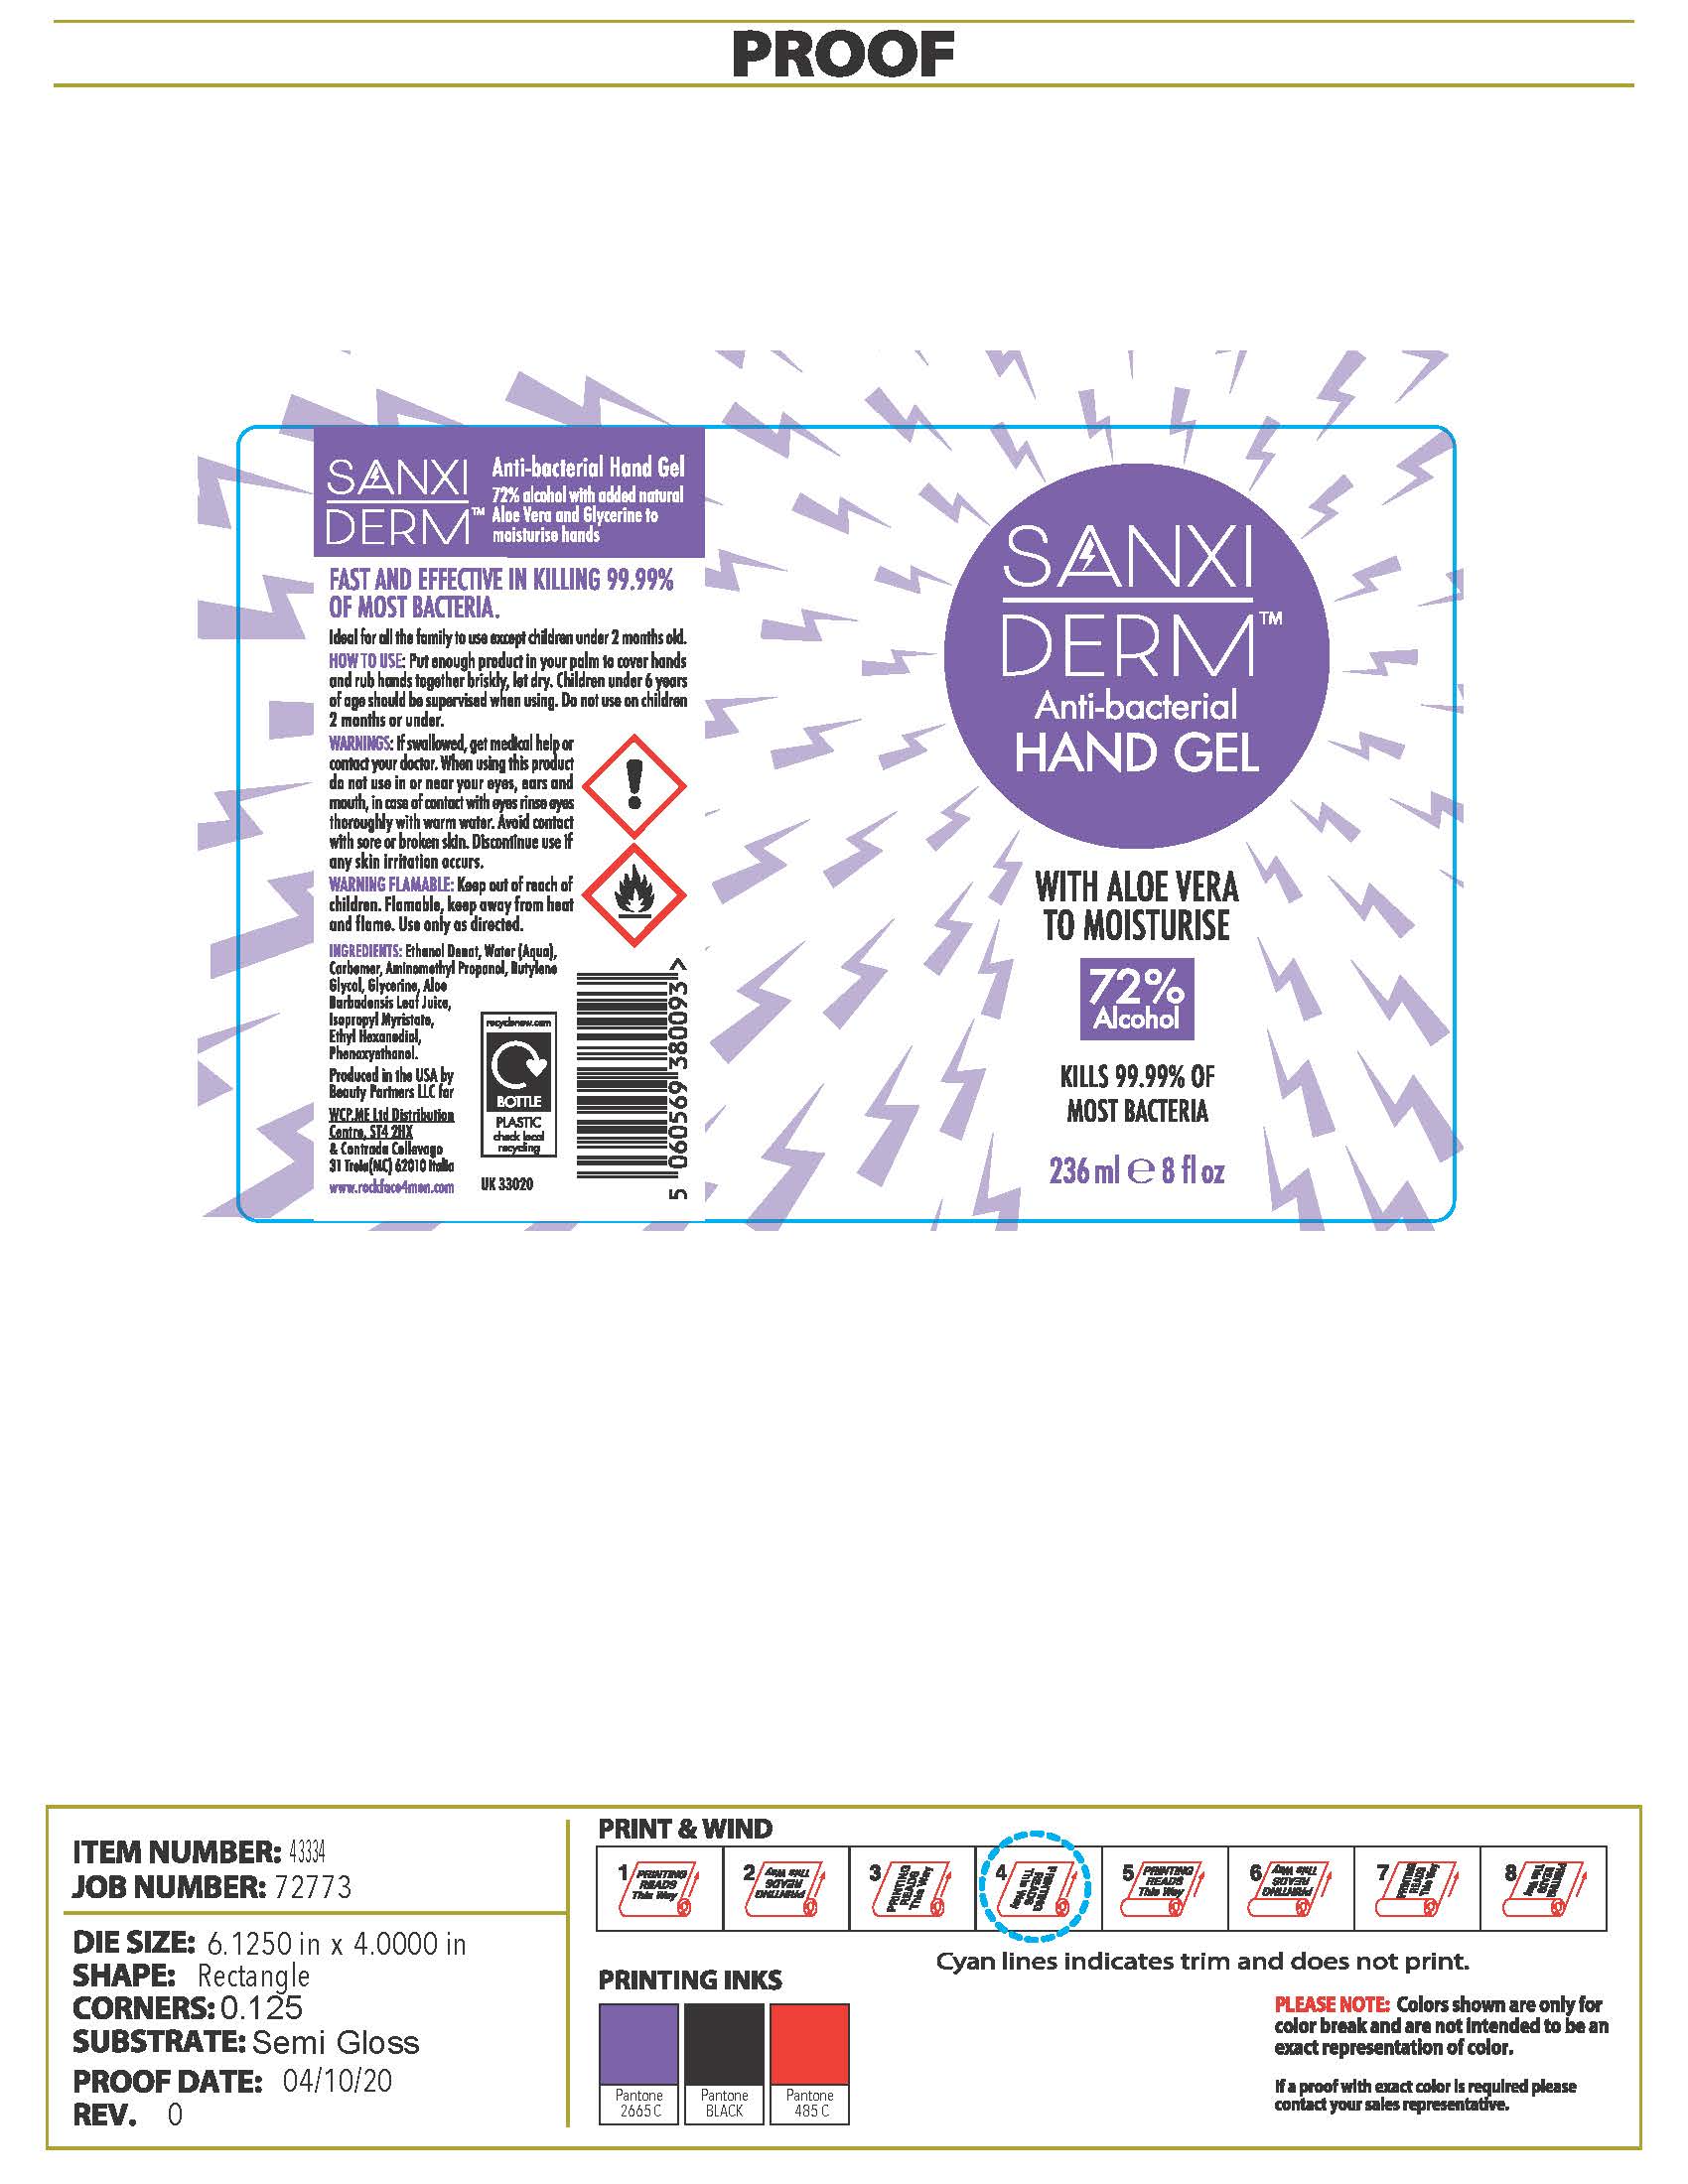 Packaging Label-SANXIDERM Anti-bacterial Hand Gel